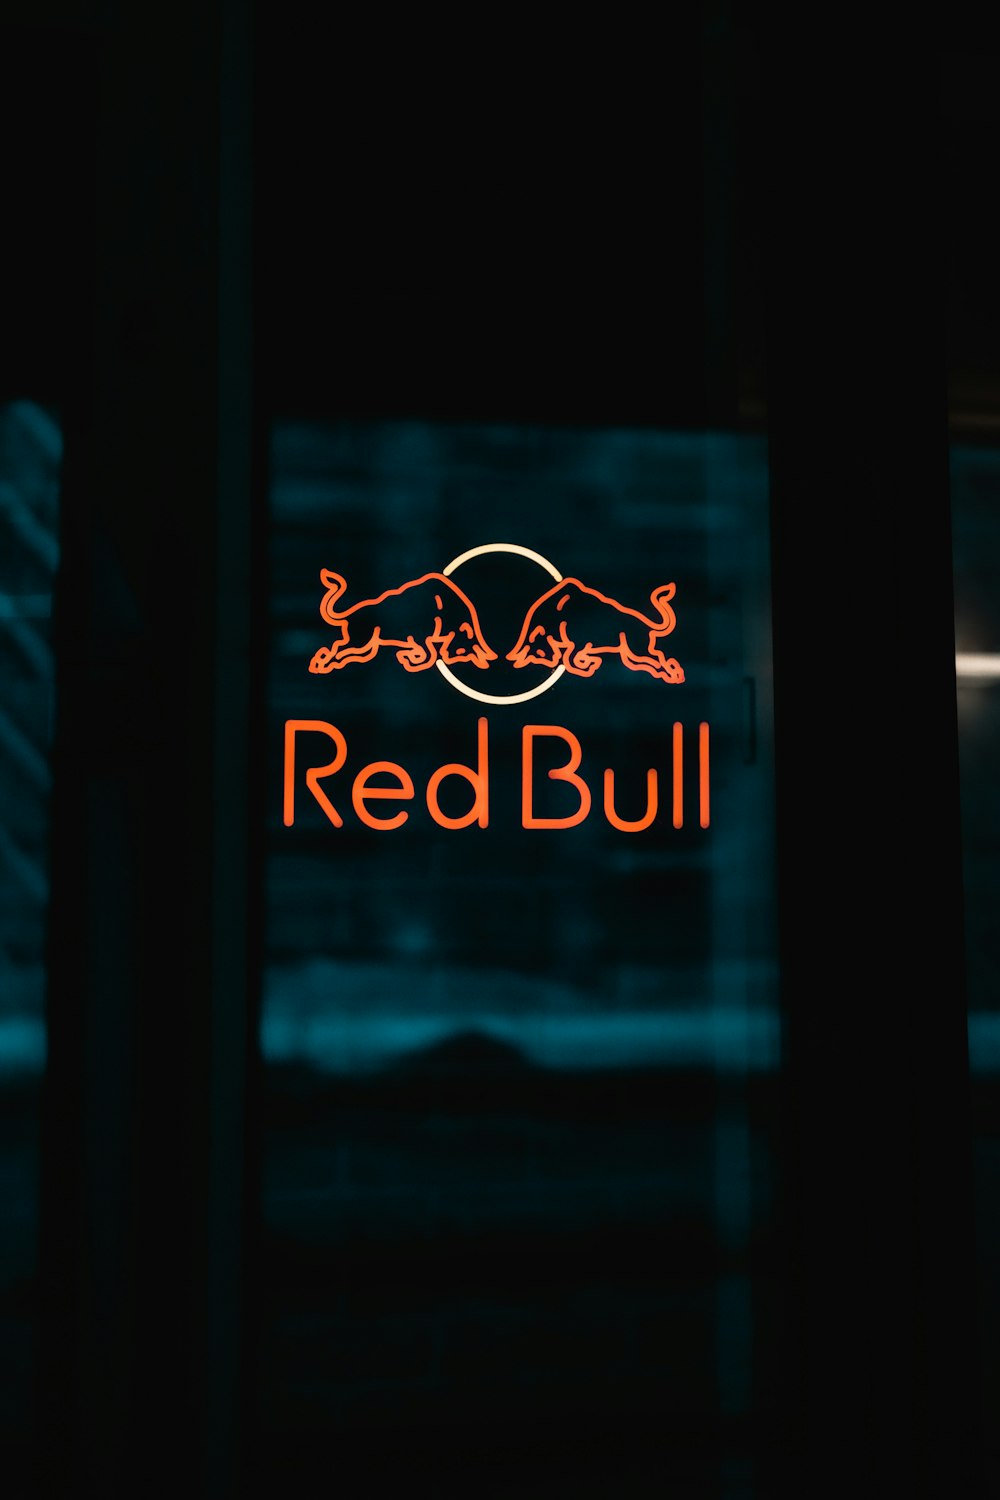 Un segno di toro rosso è illuminato al buio